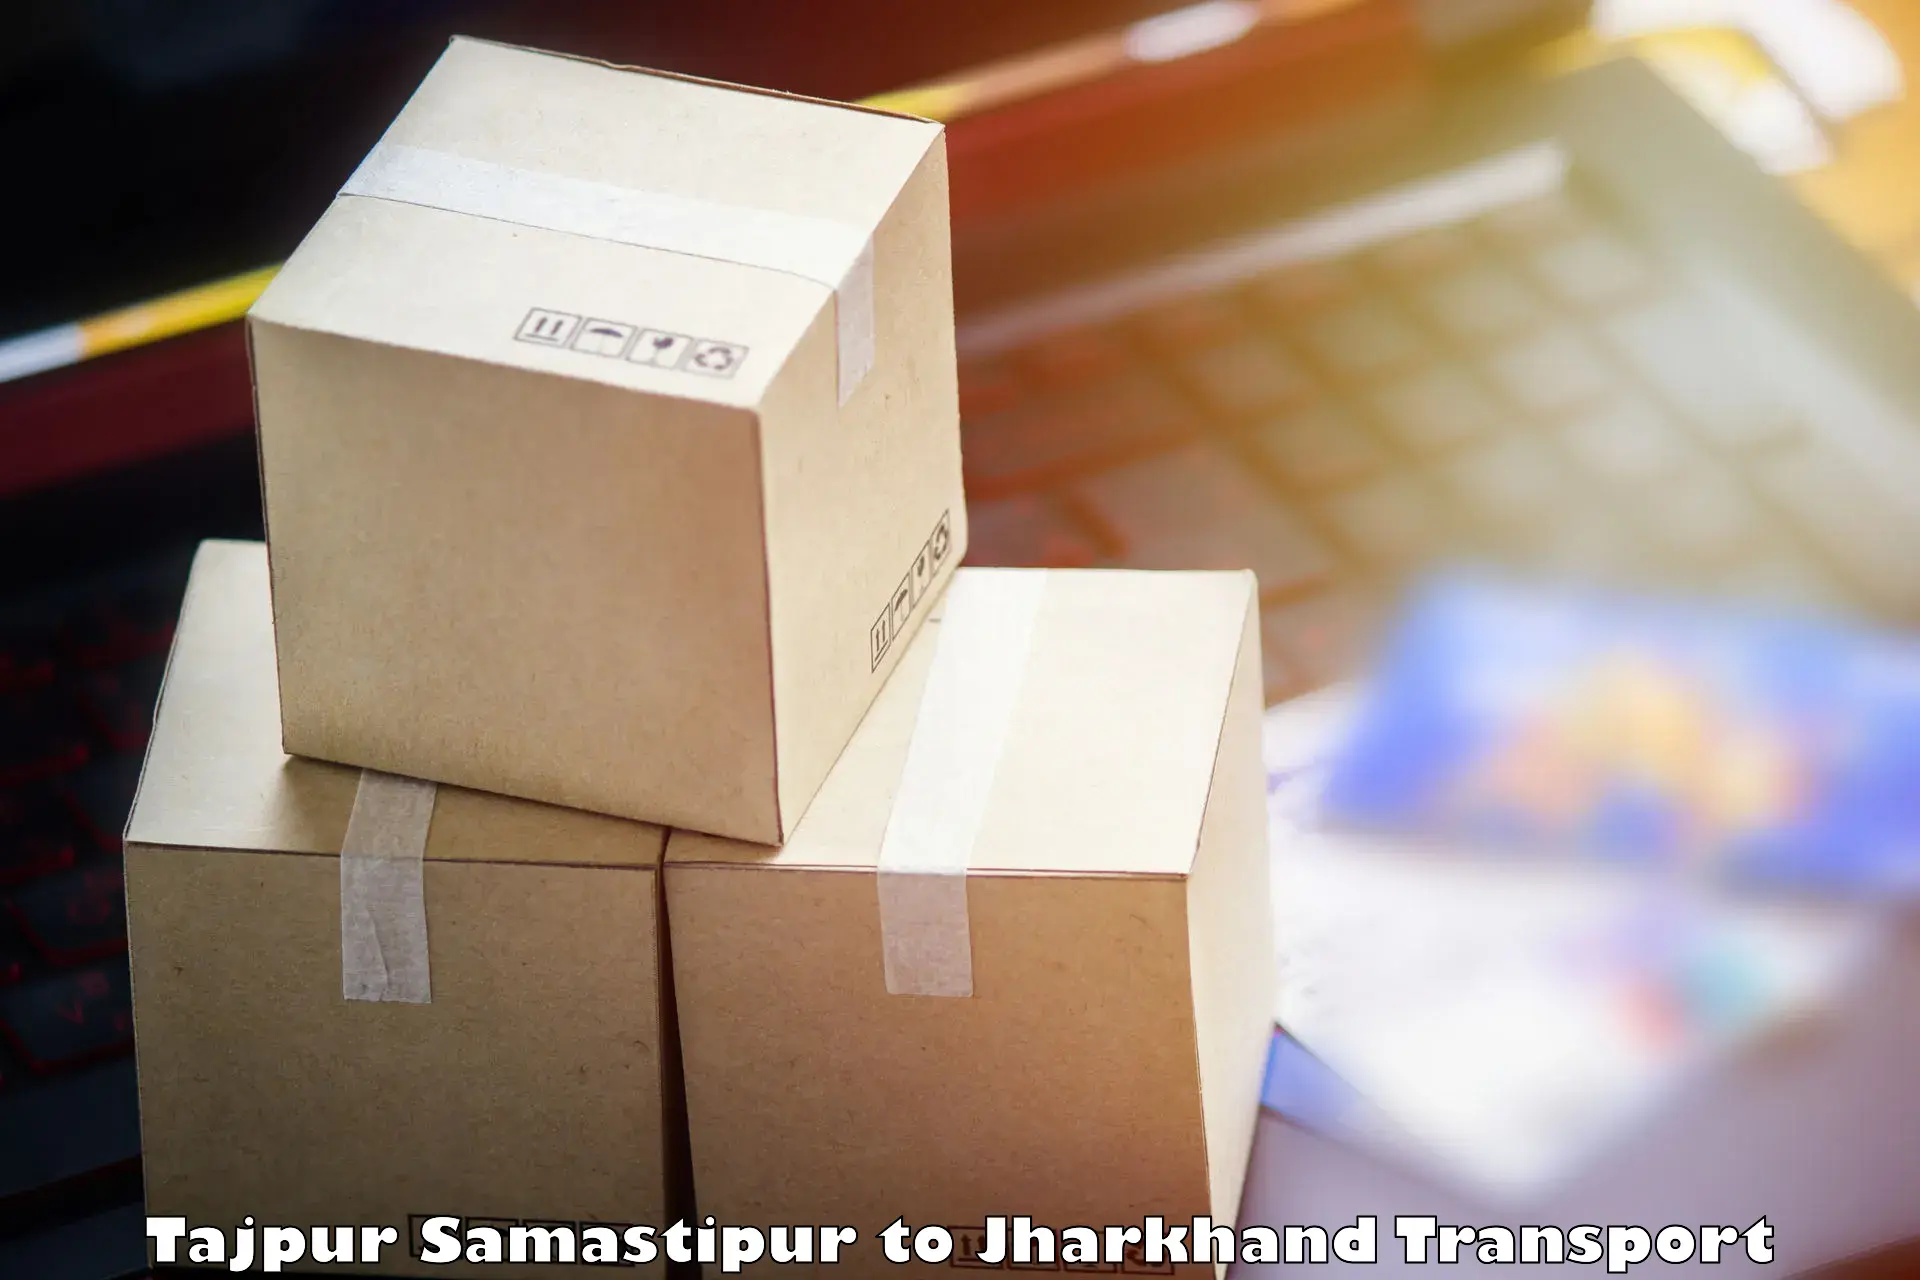 Shipping partner Tajpur Samastipur to Seraikela Kharsawan